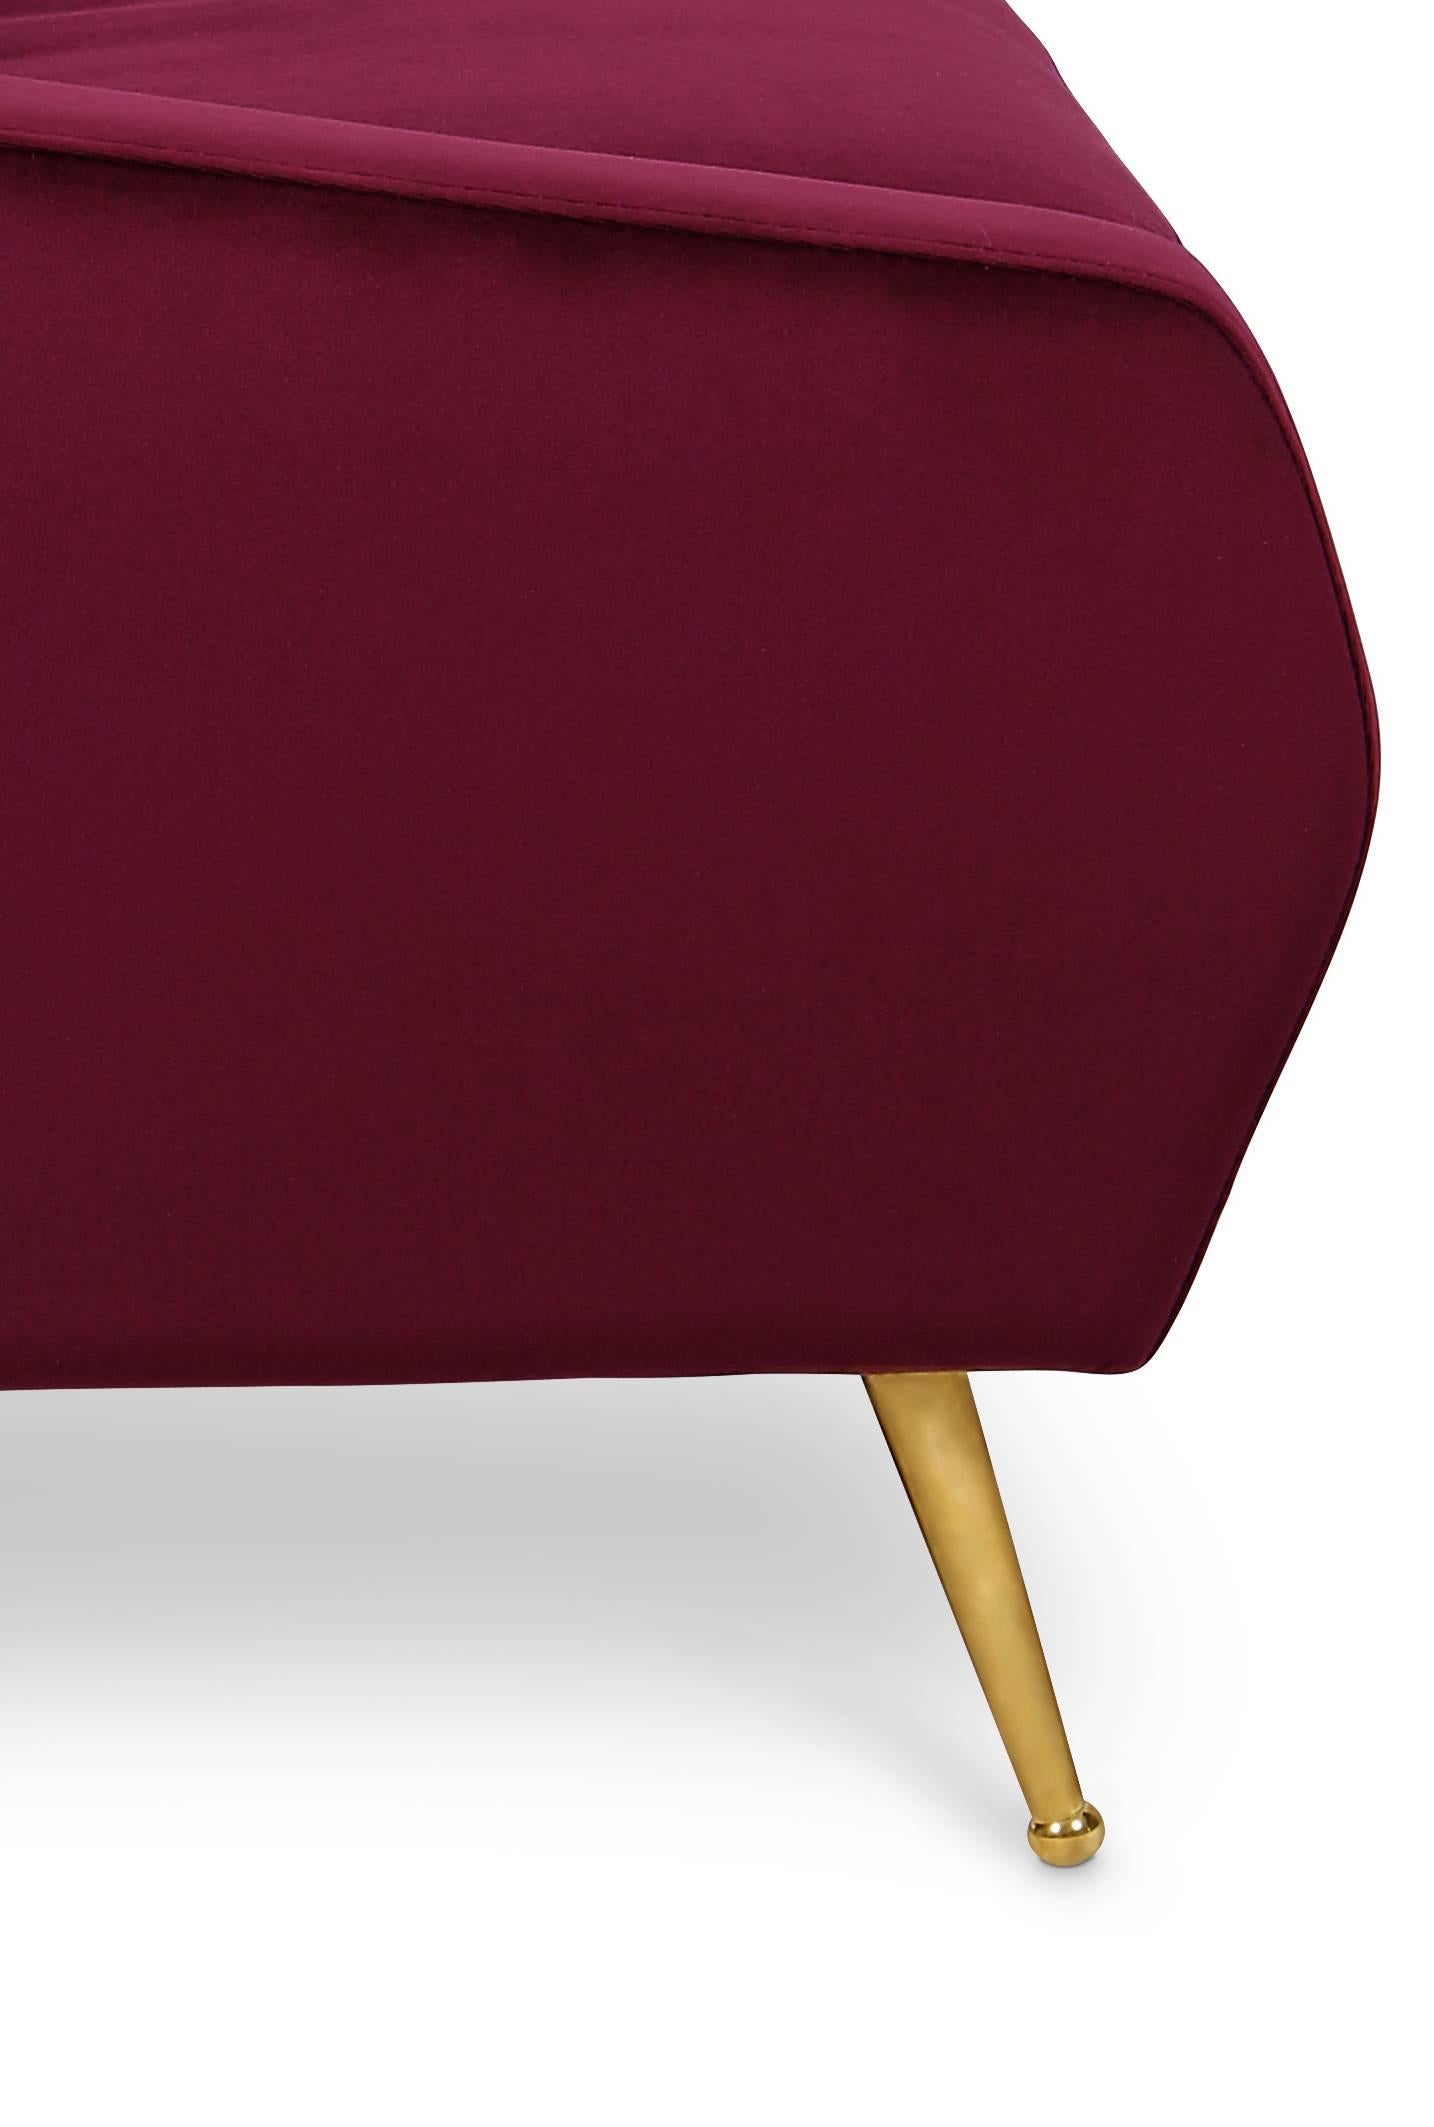 European Mid-Century Modern Inspired Velvet and Brass Armchair For Sale 1